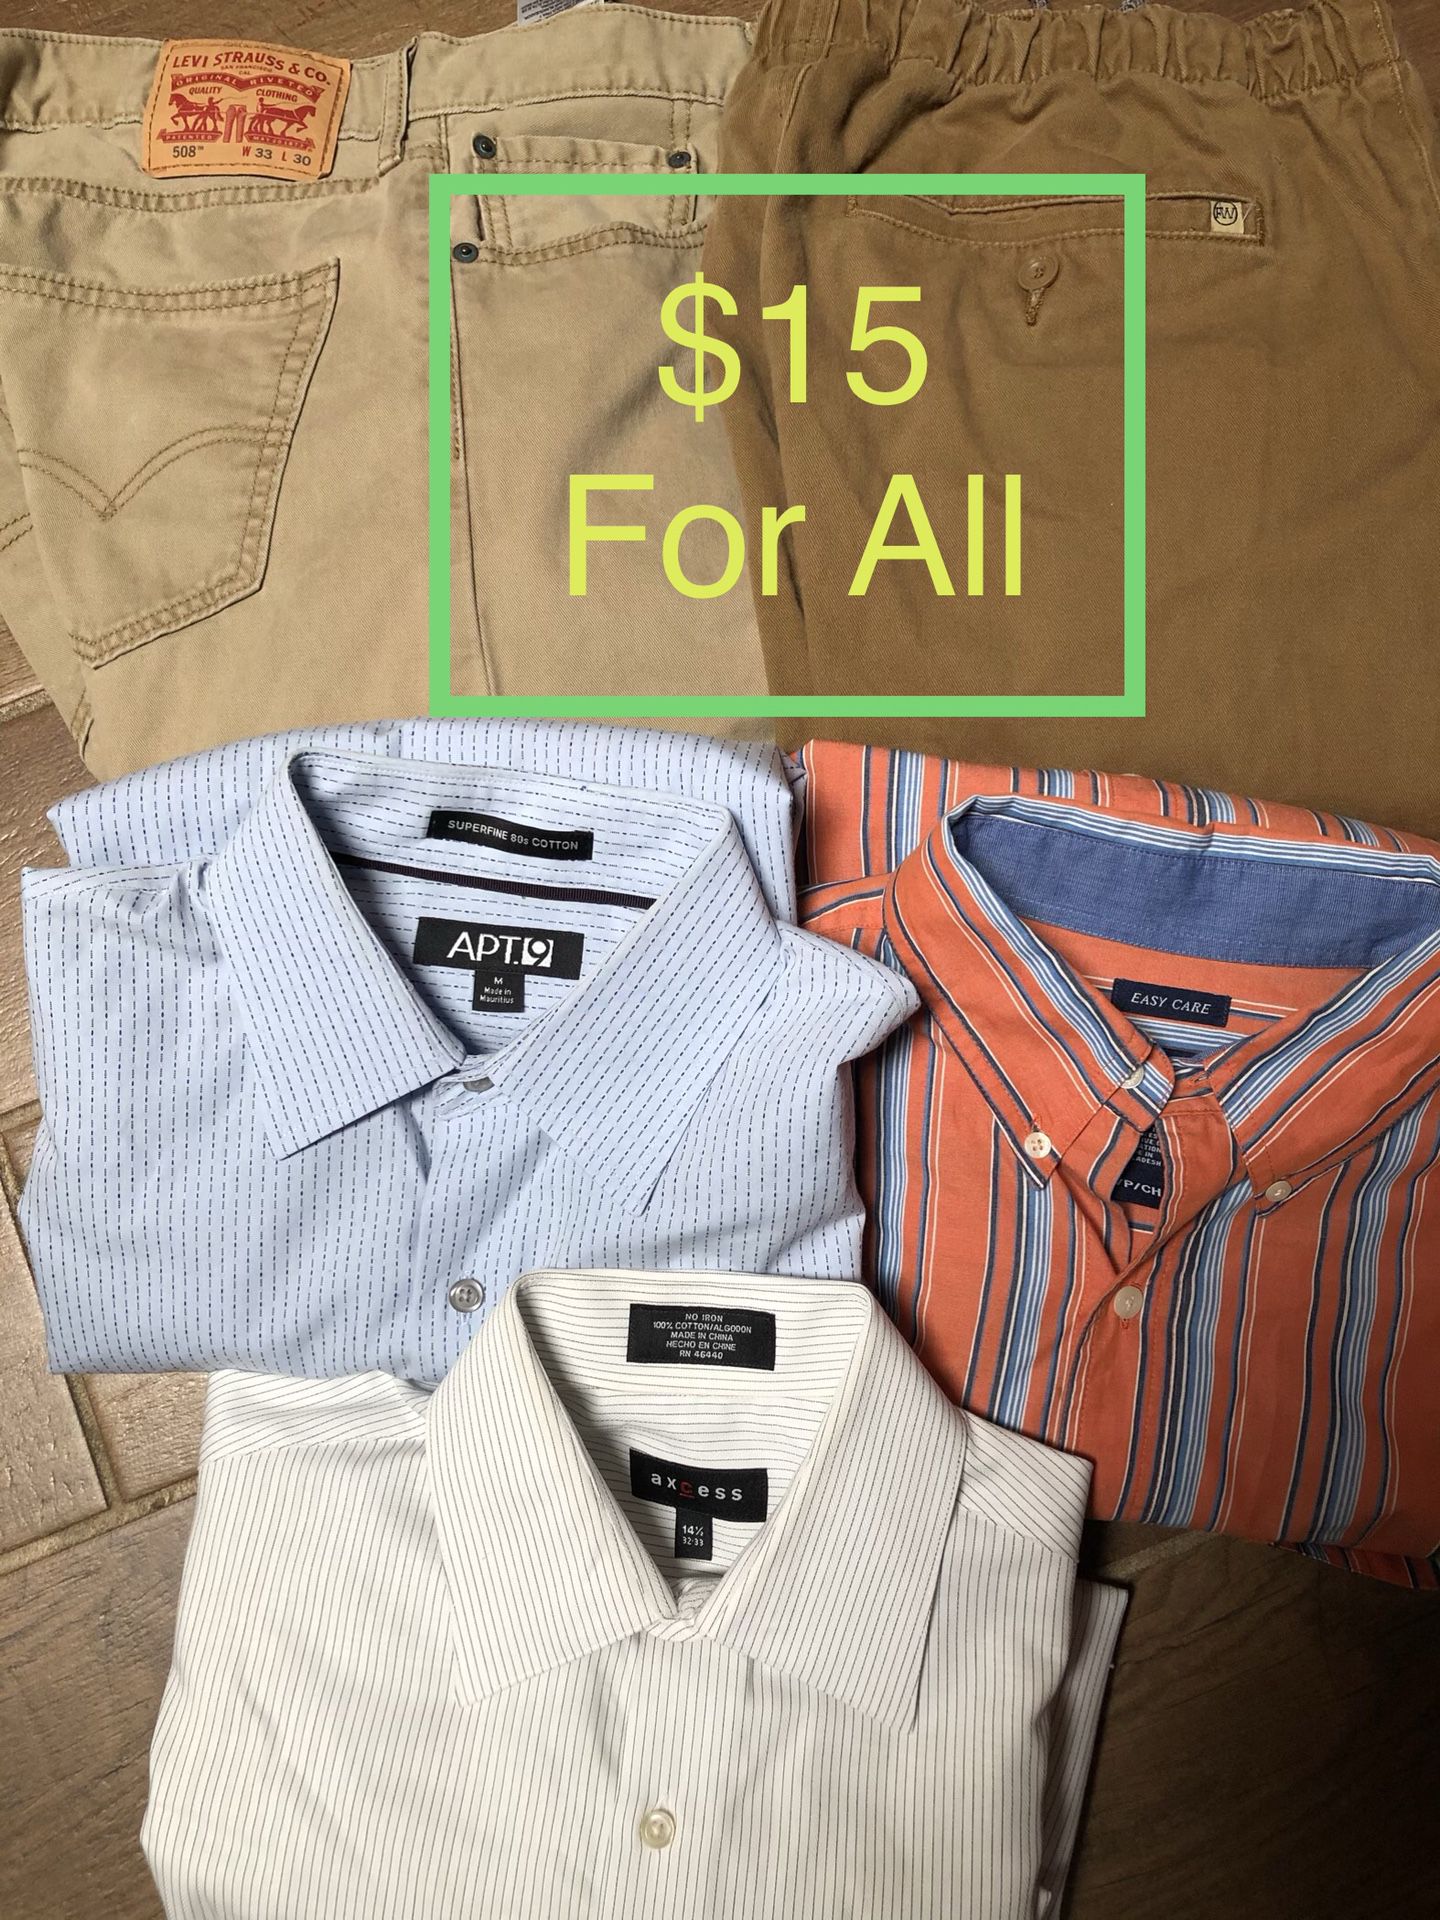 Men’s clothes $15 all